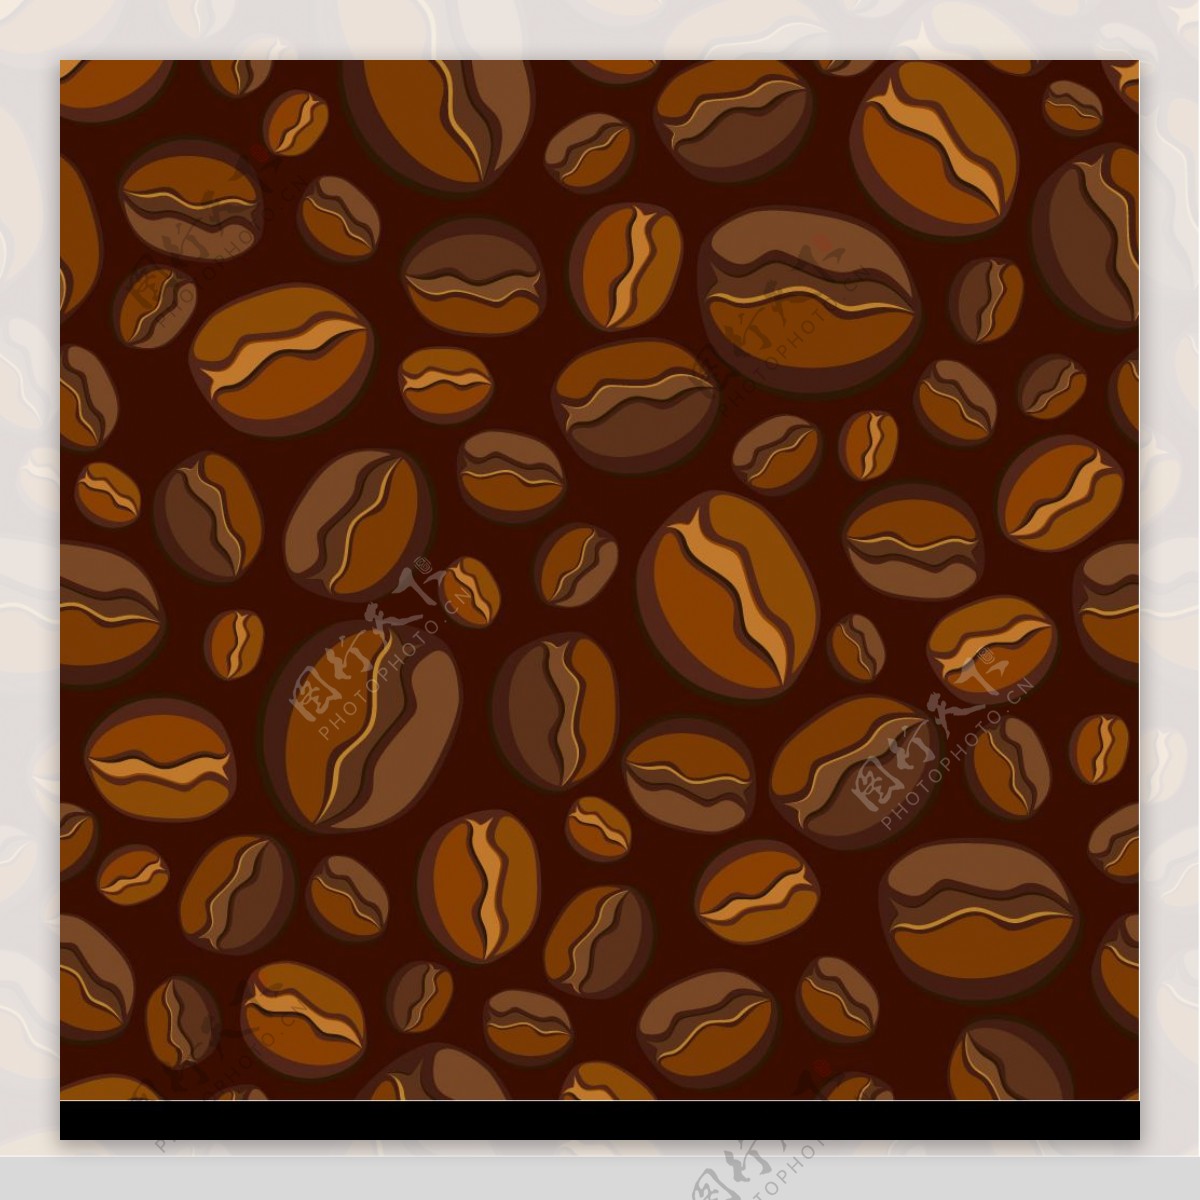 矢量咖啡豆素材图片